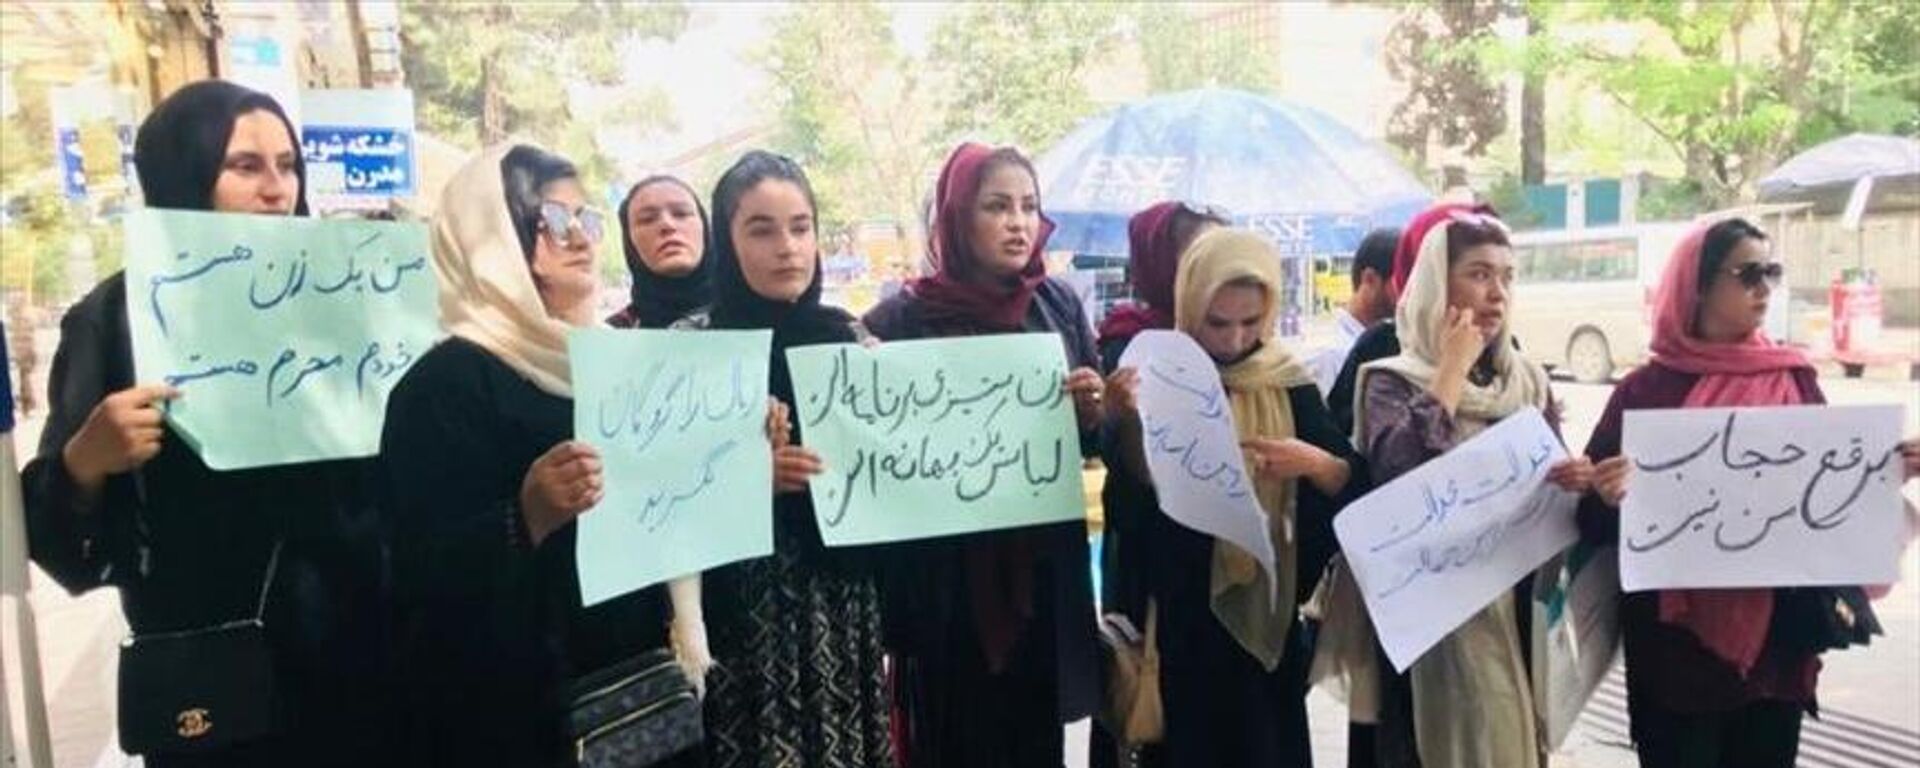  گروه طالبان اعتراض زنان علیه حجاب اجباری را سرکوب کردند - اسپوتنیک افغانستان  , 1920, 10.05.2022